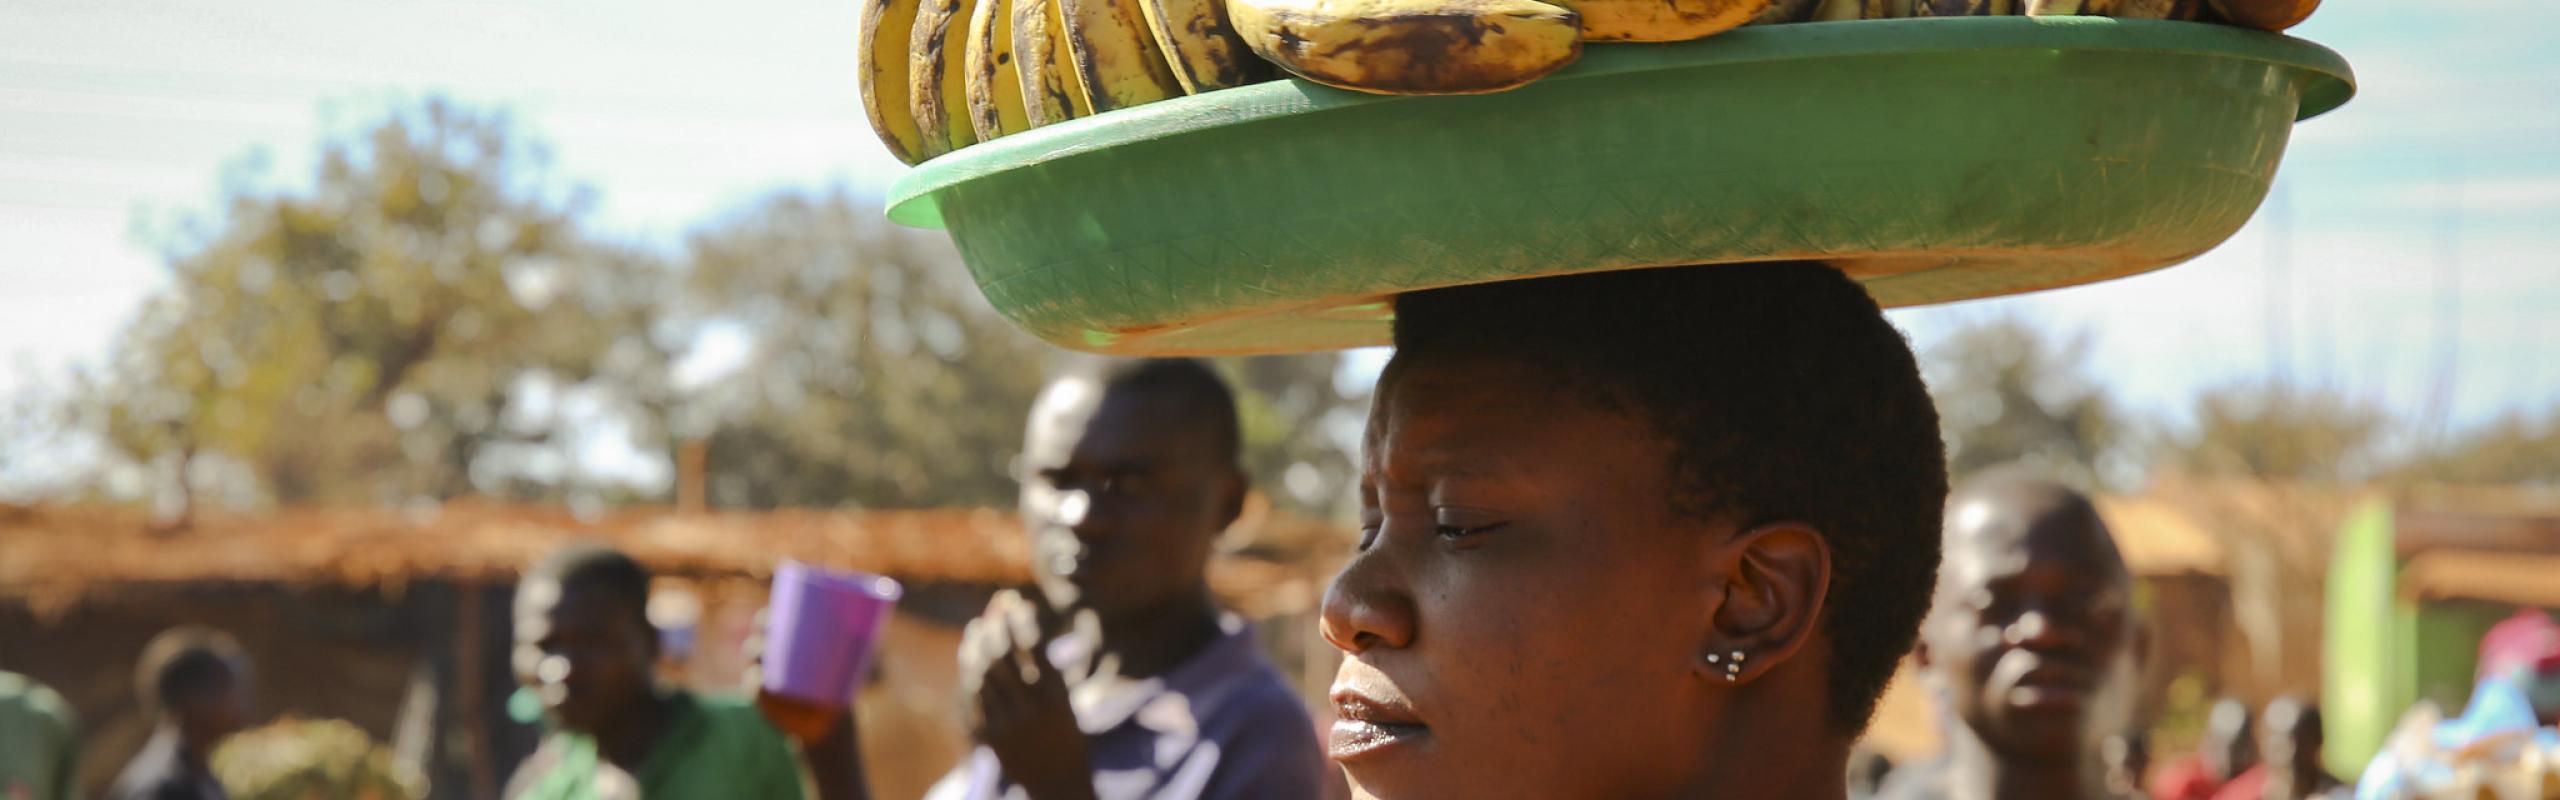 Une femme porte un plateau de fruits sur la tête dans un marché de village au Malawi